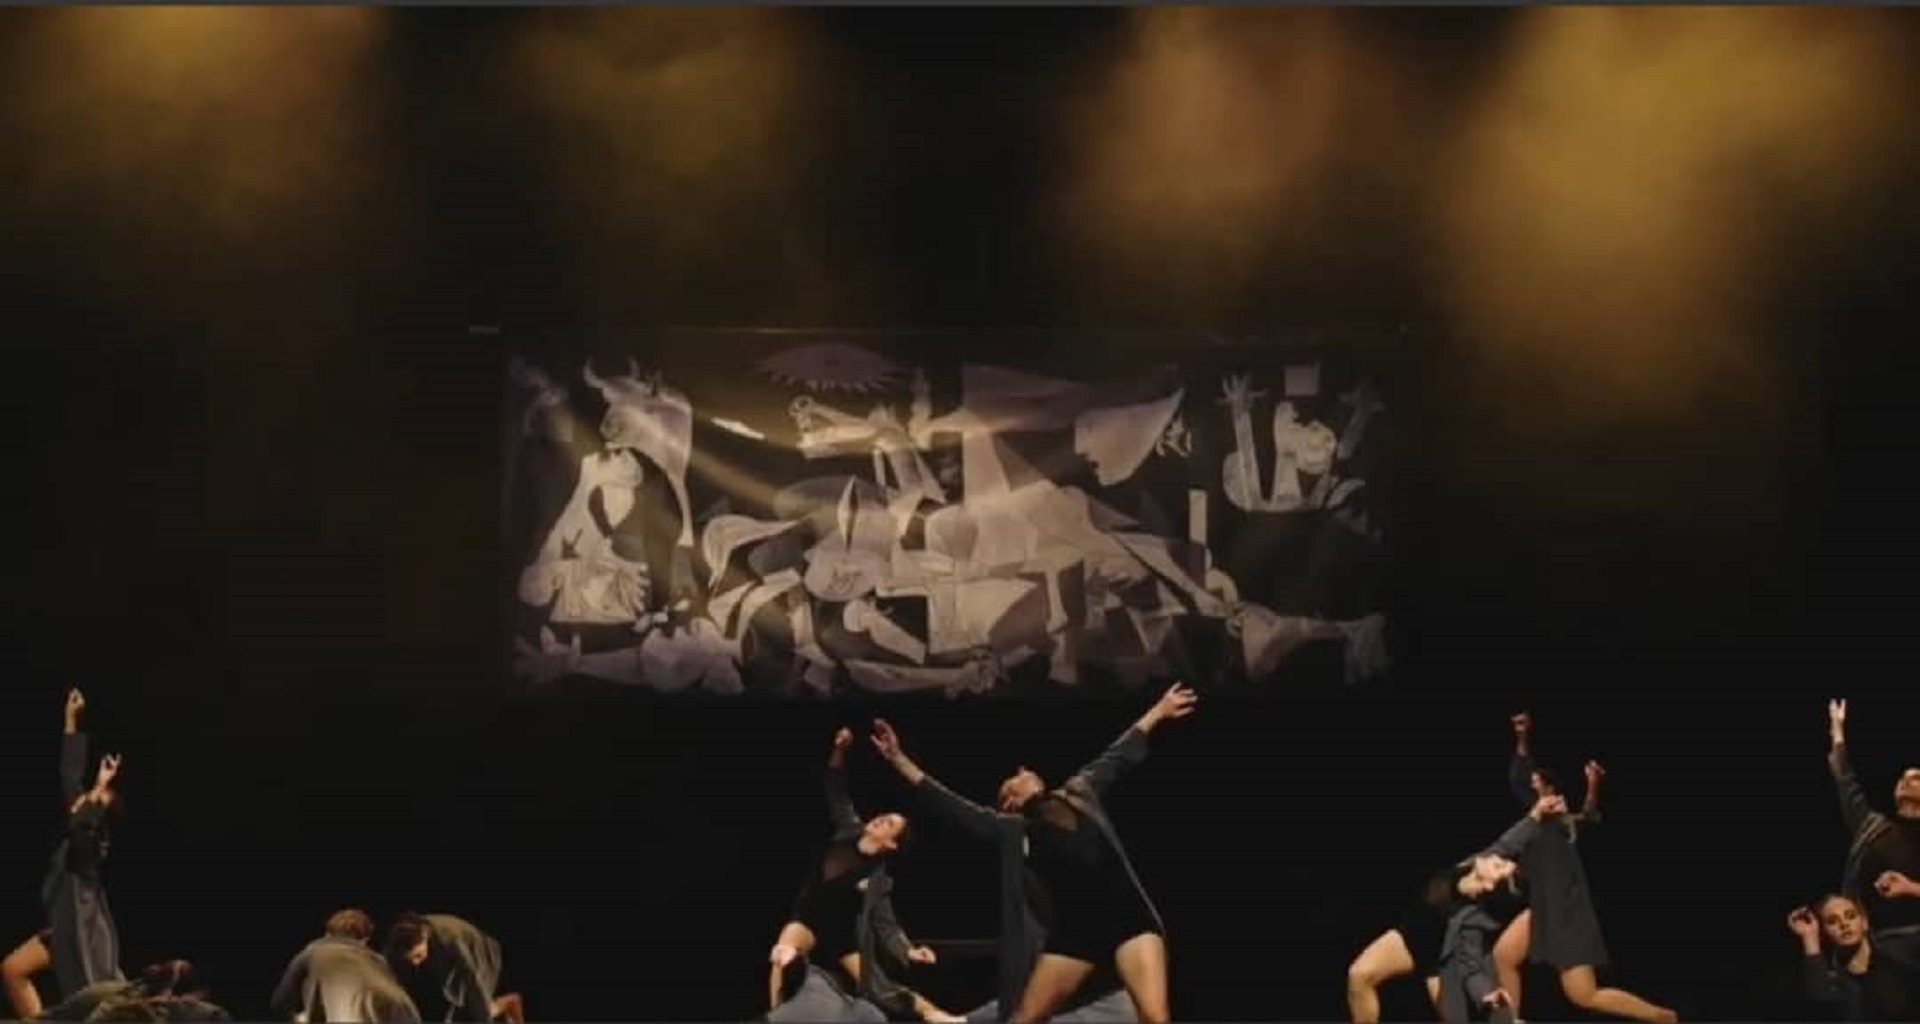 Λάρνακα: Αφιέρωμα Χορού στη μουσική του Μίκη Θεοδωράκη «Χωρίς Ταυτότητα»